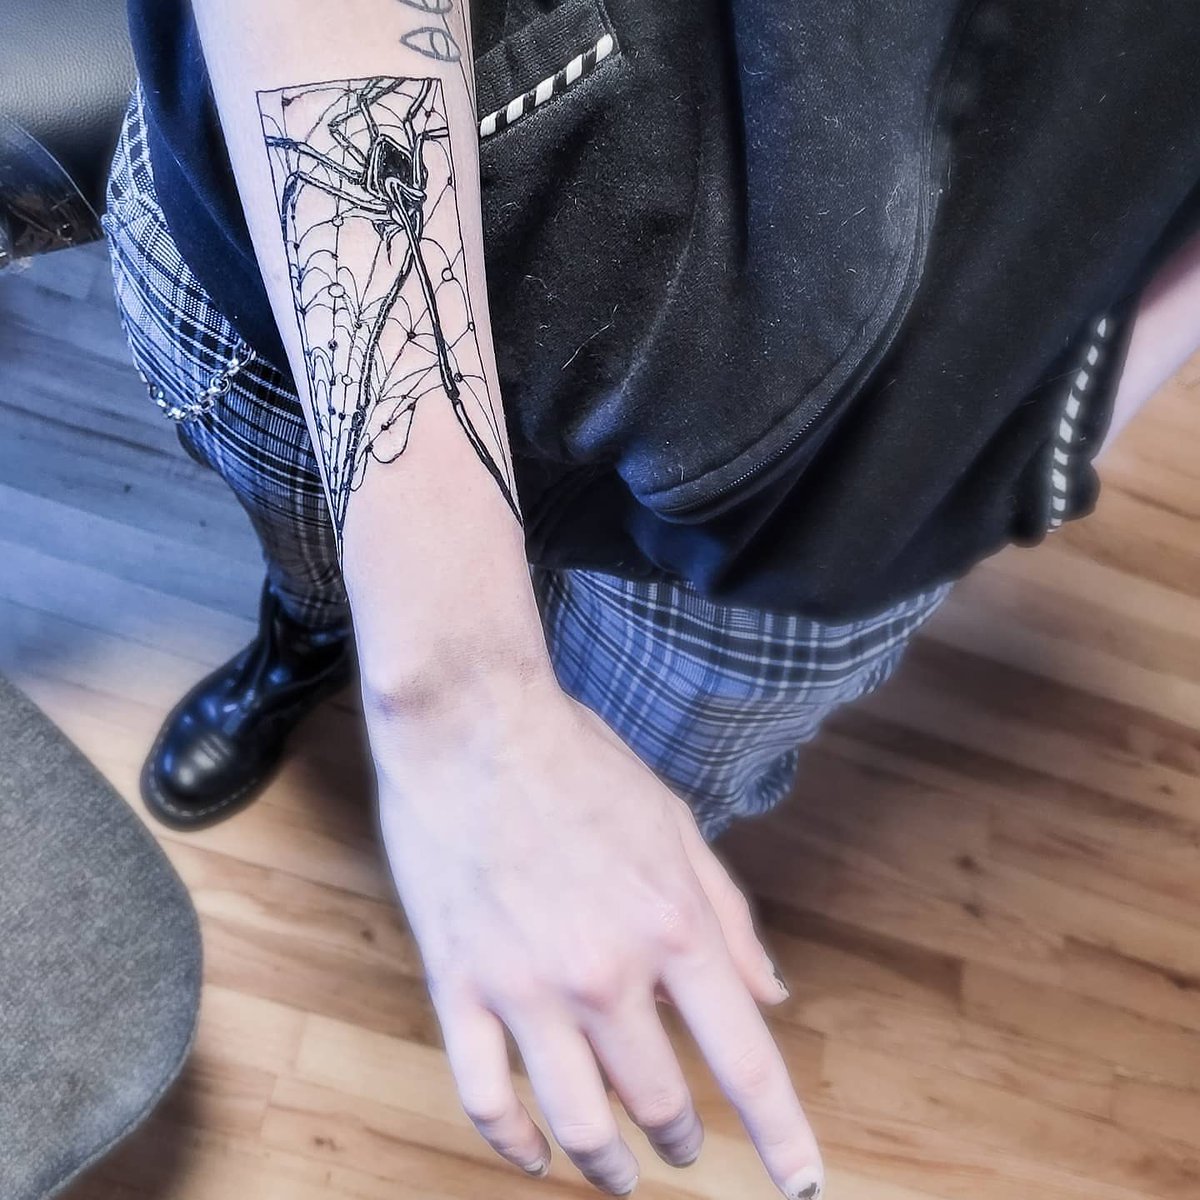 🕸️Widow🕸️

•̩̩͙*˚⁺‧. •̩̩͙*˚⁺‧.˚ *•̩̩͙ ✩. •̩̩͙*˚⁺‧. •̩̩͙*˚⁺‧. ˚ *•̩̩͙ ✩.

 #tattoo
 #tattooing
#tattoodesign
#tattooartist
#tattooflash
#inkwork #animetattoo #comictattoo 
#illustration #originaltattoo
#spidertattoo #spider #gothic #emo #blackwork #fineline